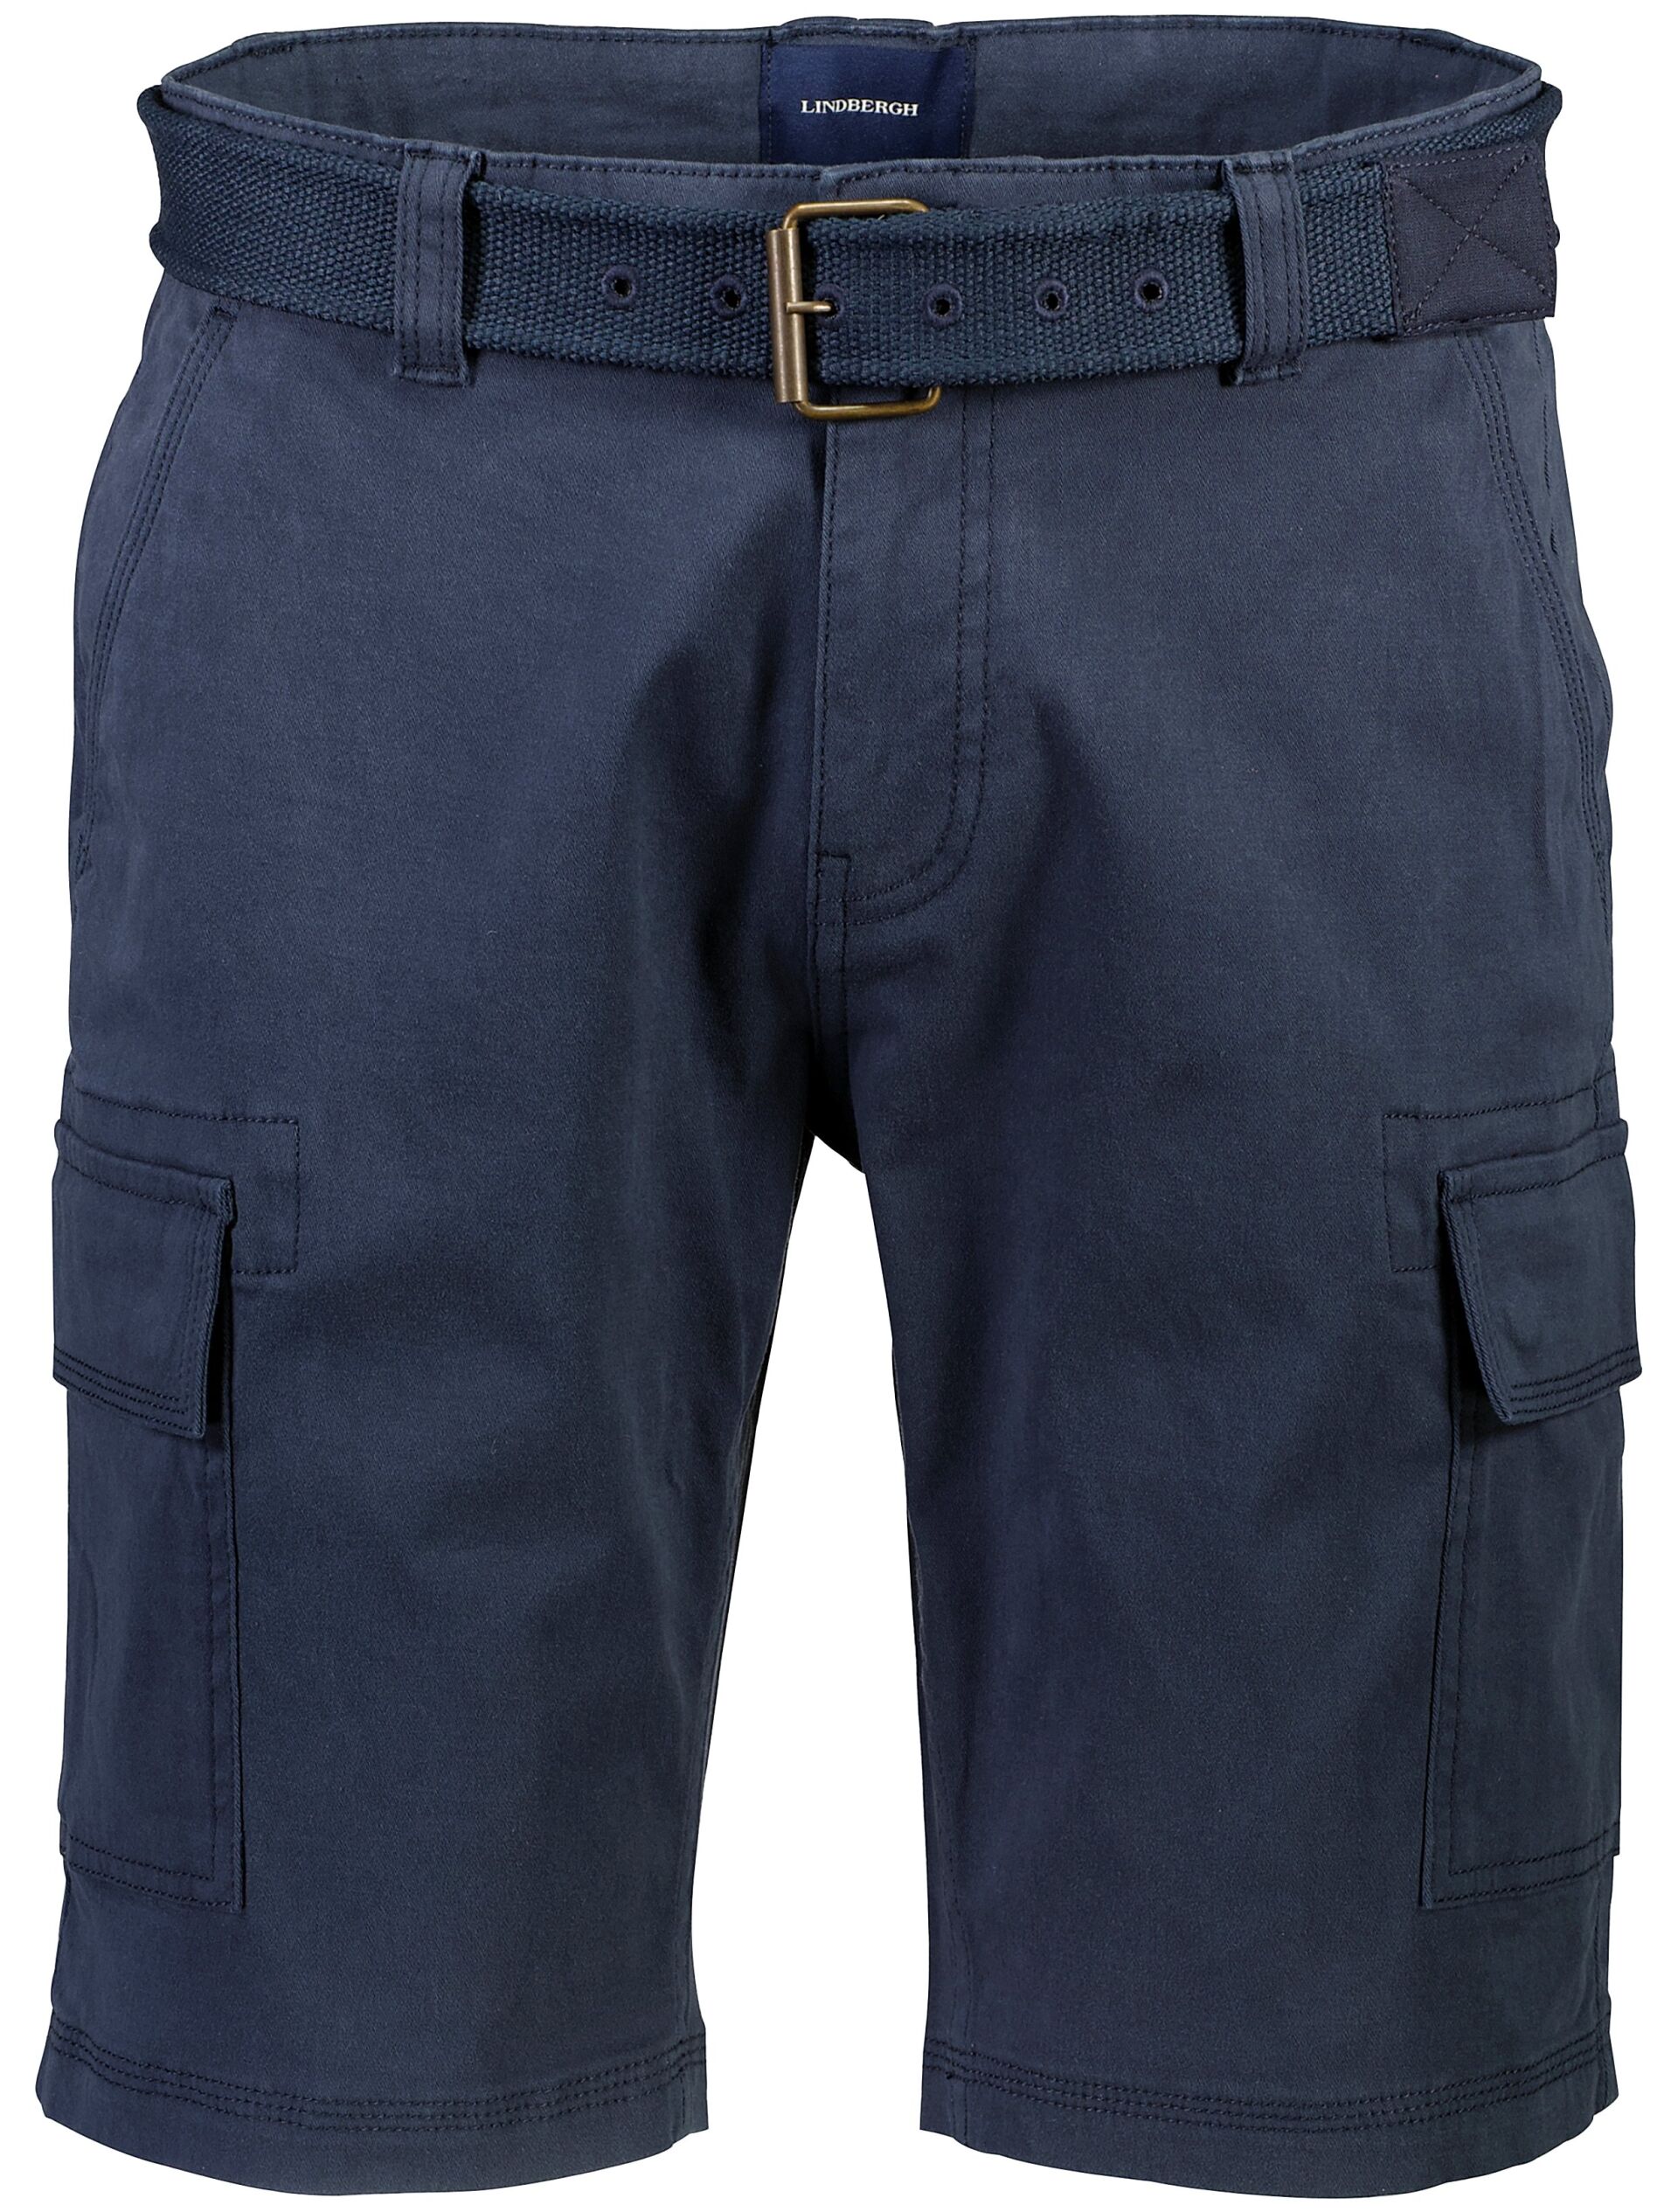 Cargo shorts Cargo shorts Blue 30-525025